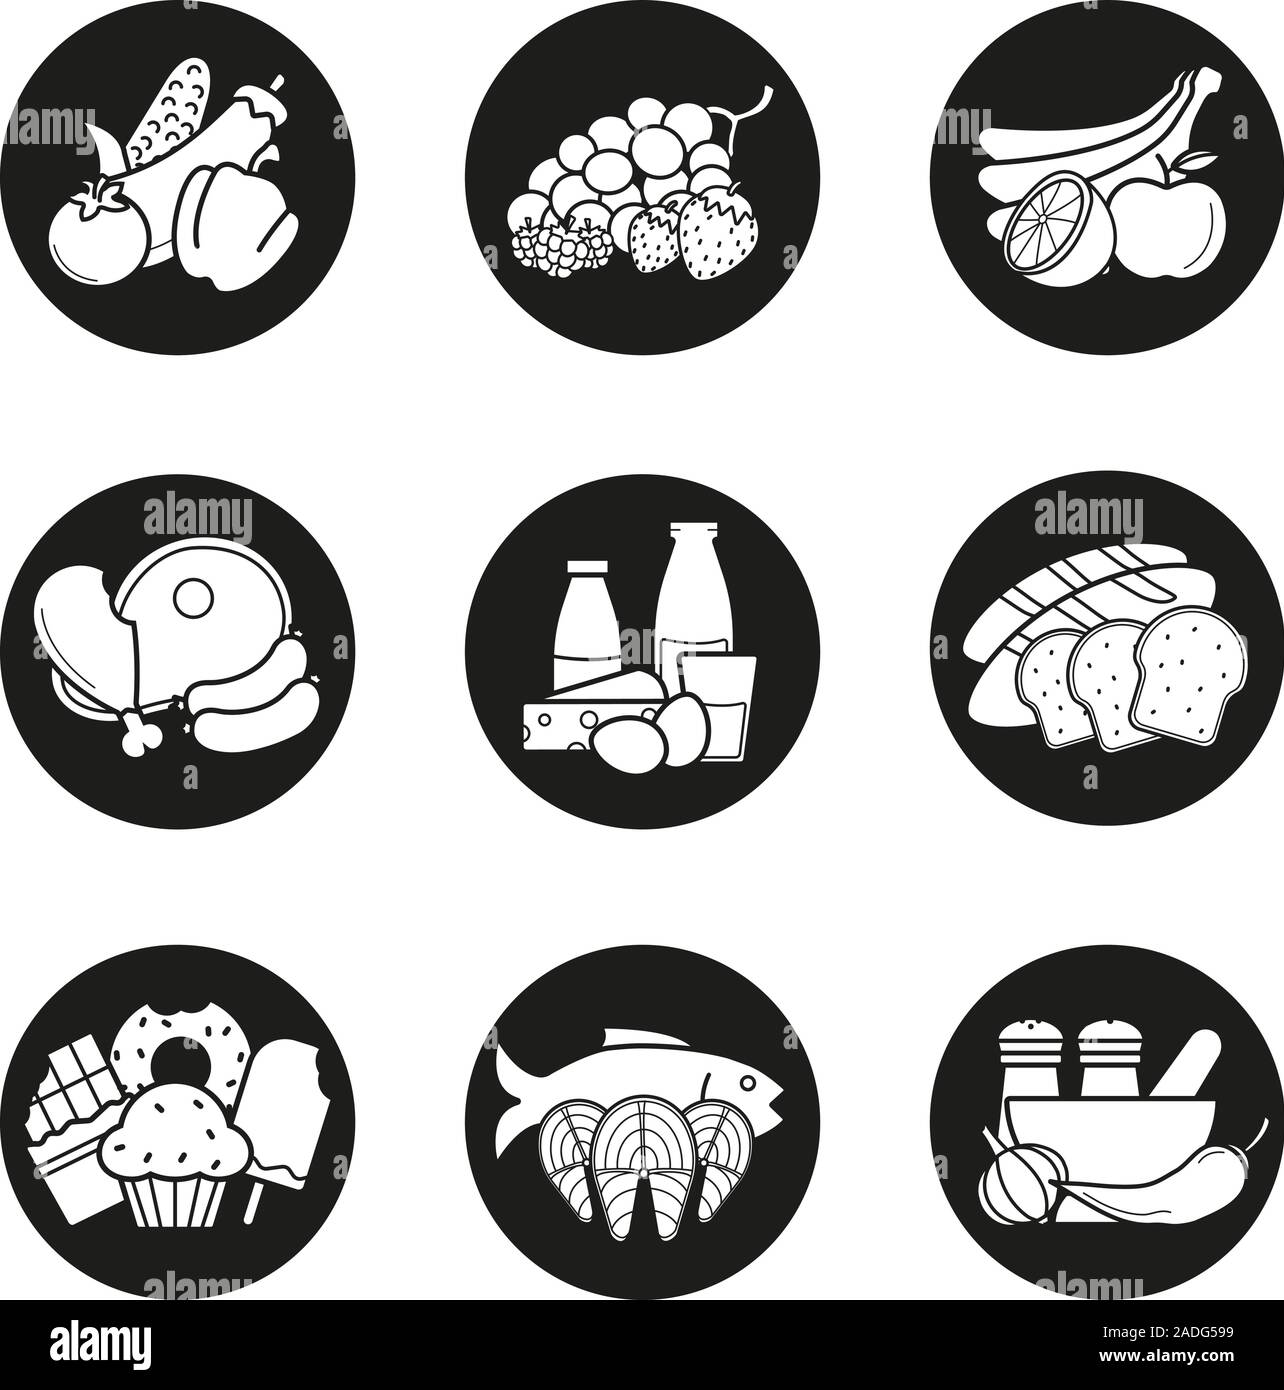 Lebensmittelgeschäft Produktkategorien Symbole gesetzt. Gemüse, Früchte, Beeren, Fleisch-, Milch- und Getreideprodukte, Süßwaren, Fisch und Meeresfrüchte, Gewürze. Vektor weiss s Stock Vektor